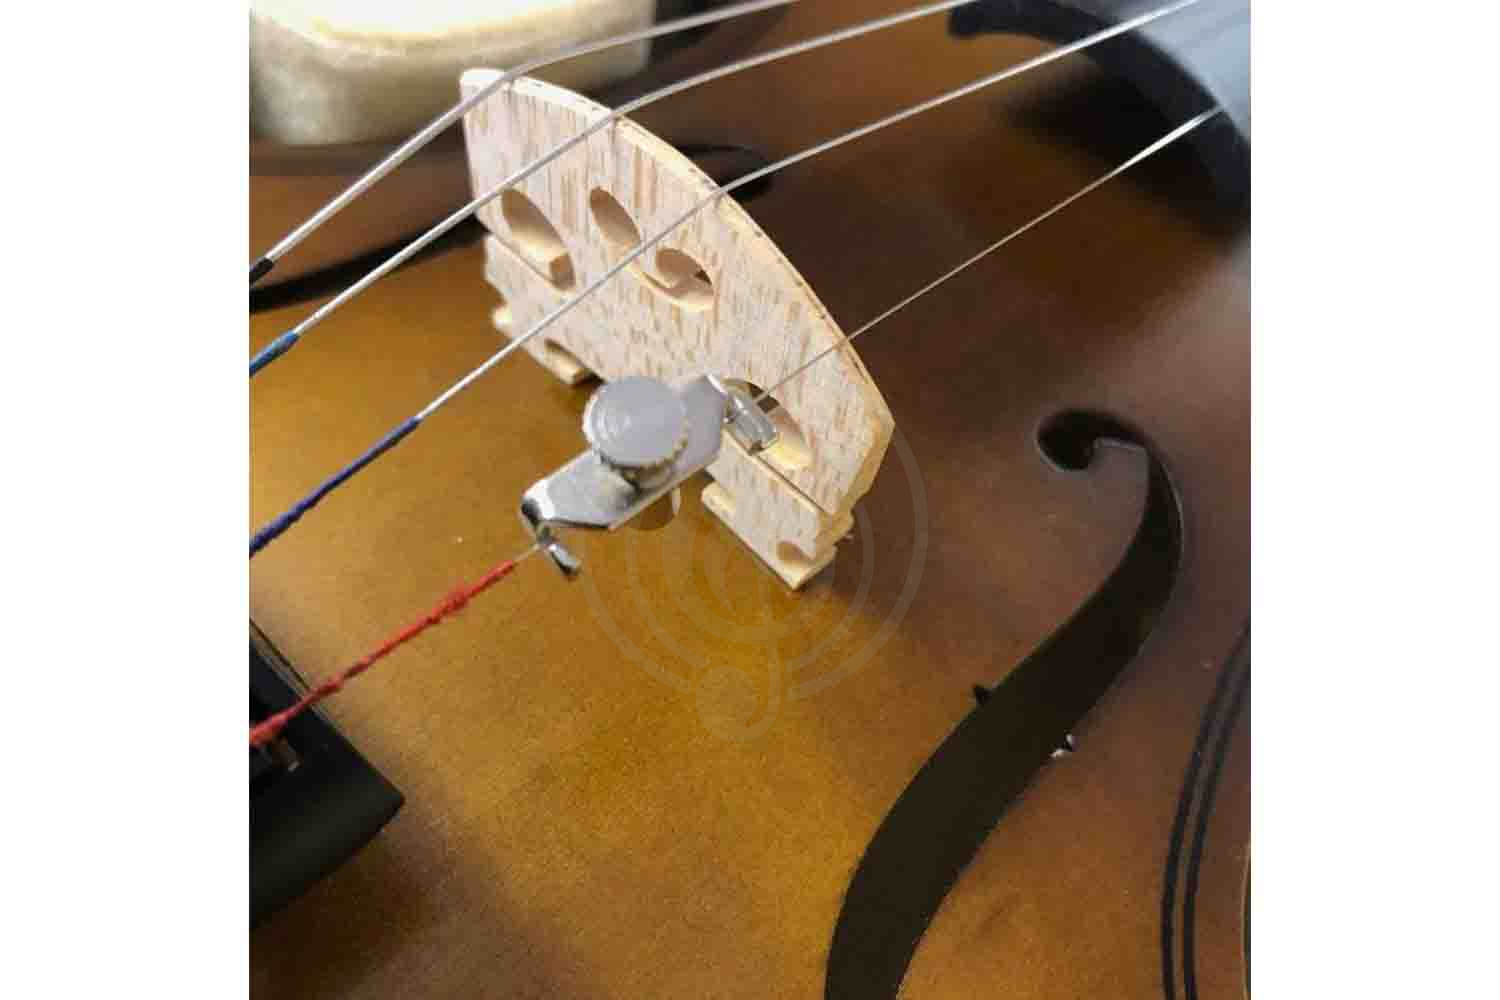 Машинка для скрипки Машинки для скрипок ANTONIO LAVAZZA  ANTONIO LAVAZZA BT1 - Машинка скрипичная размер 1/8 BT1 1/8 - фото 1